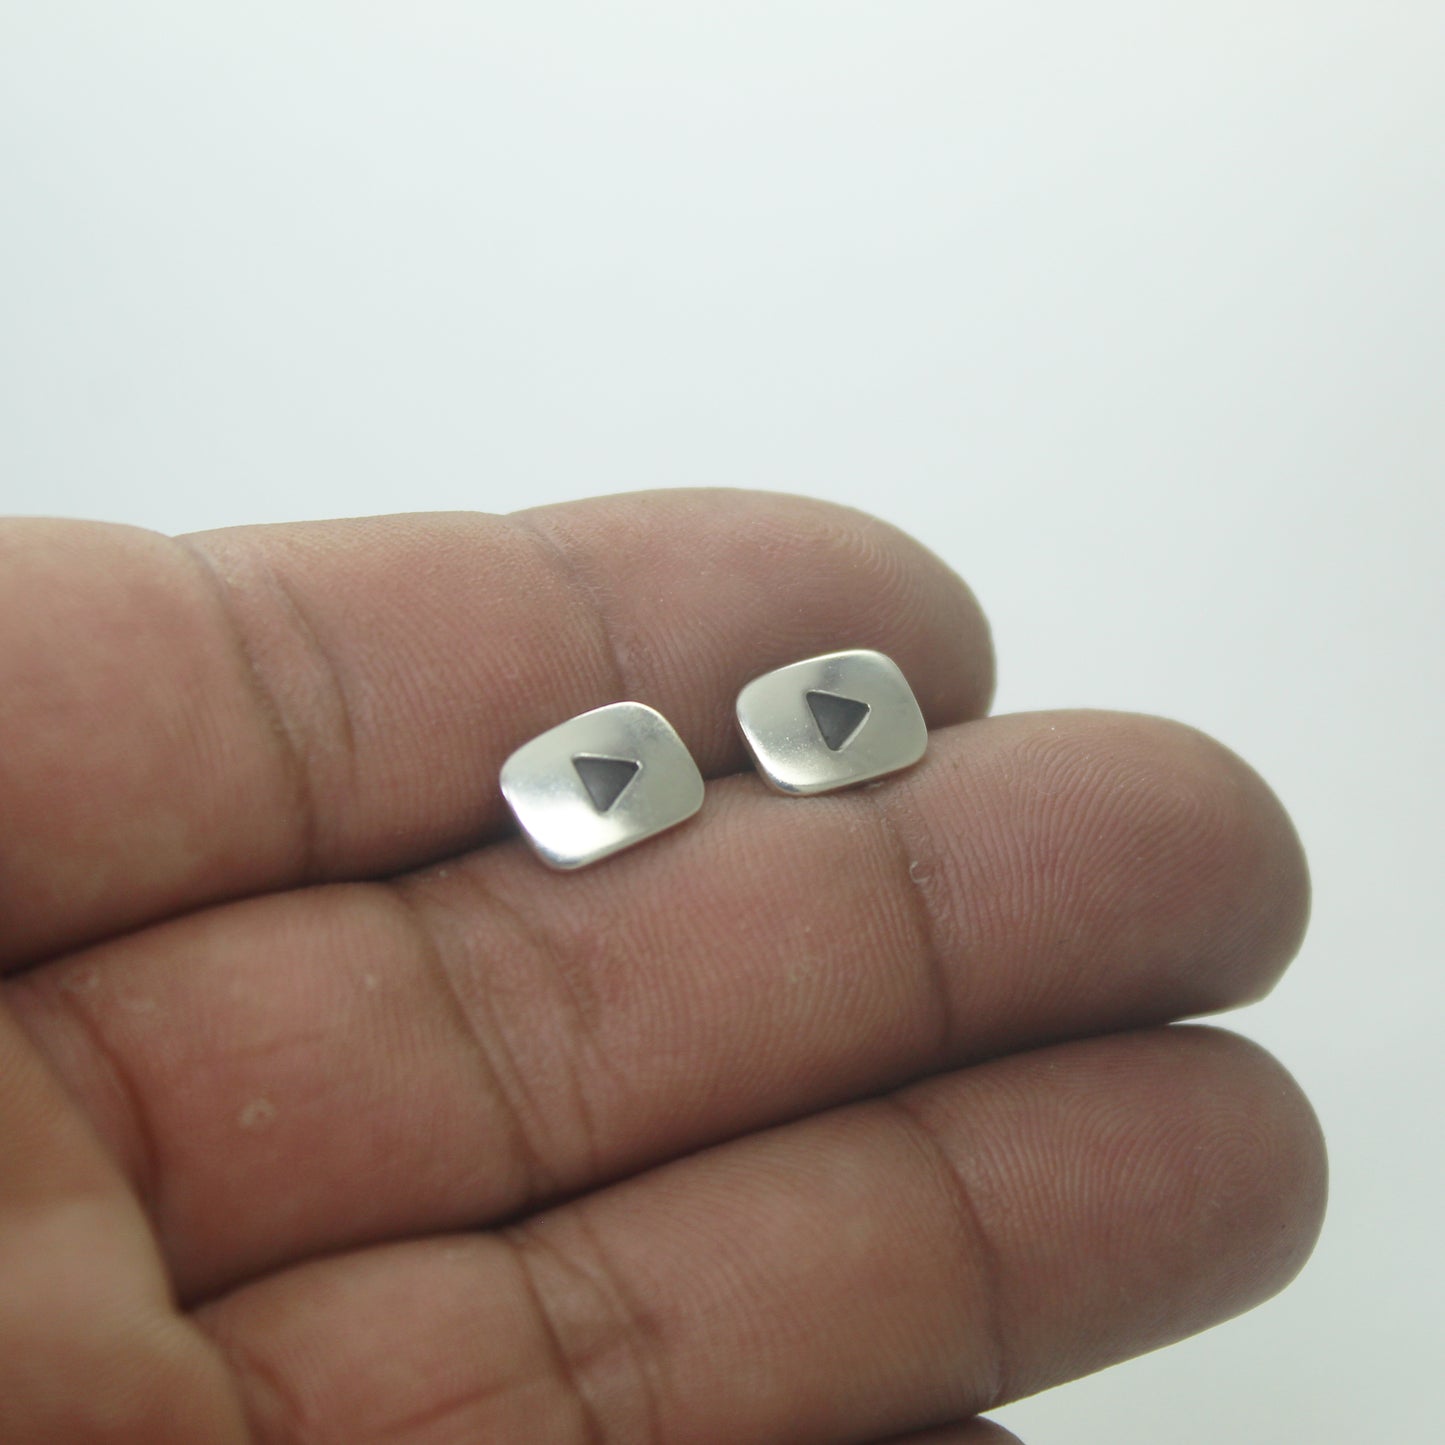 Youtube logo earrings in 925 silver